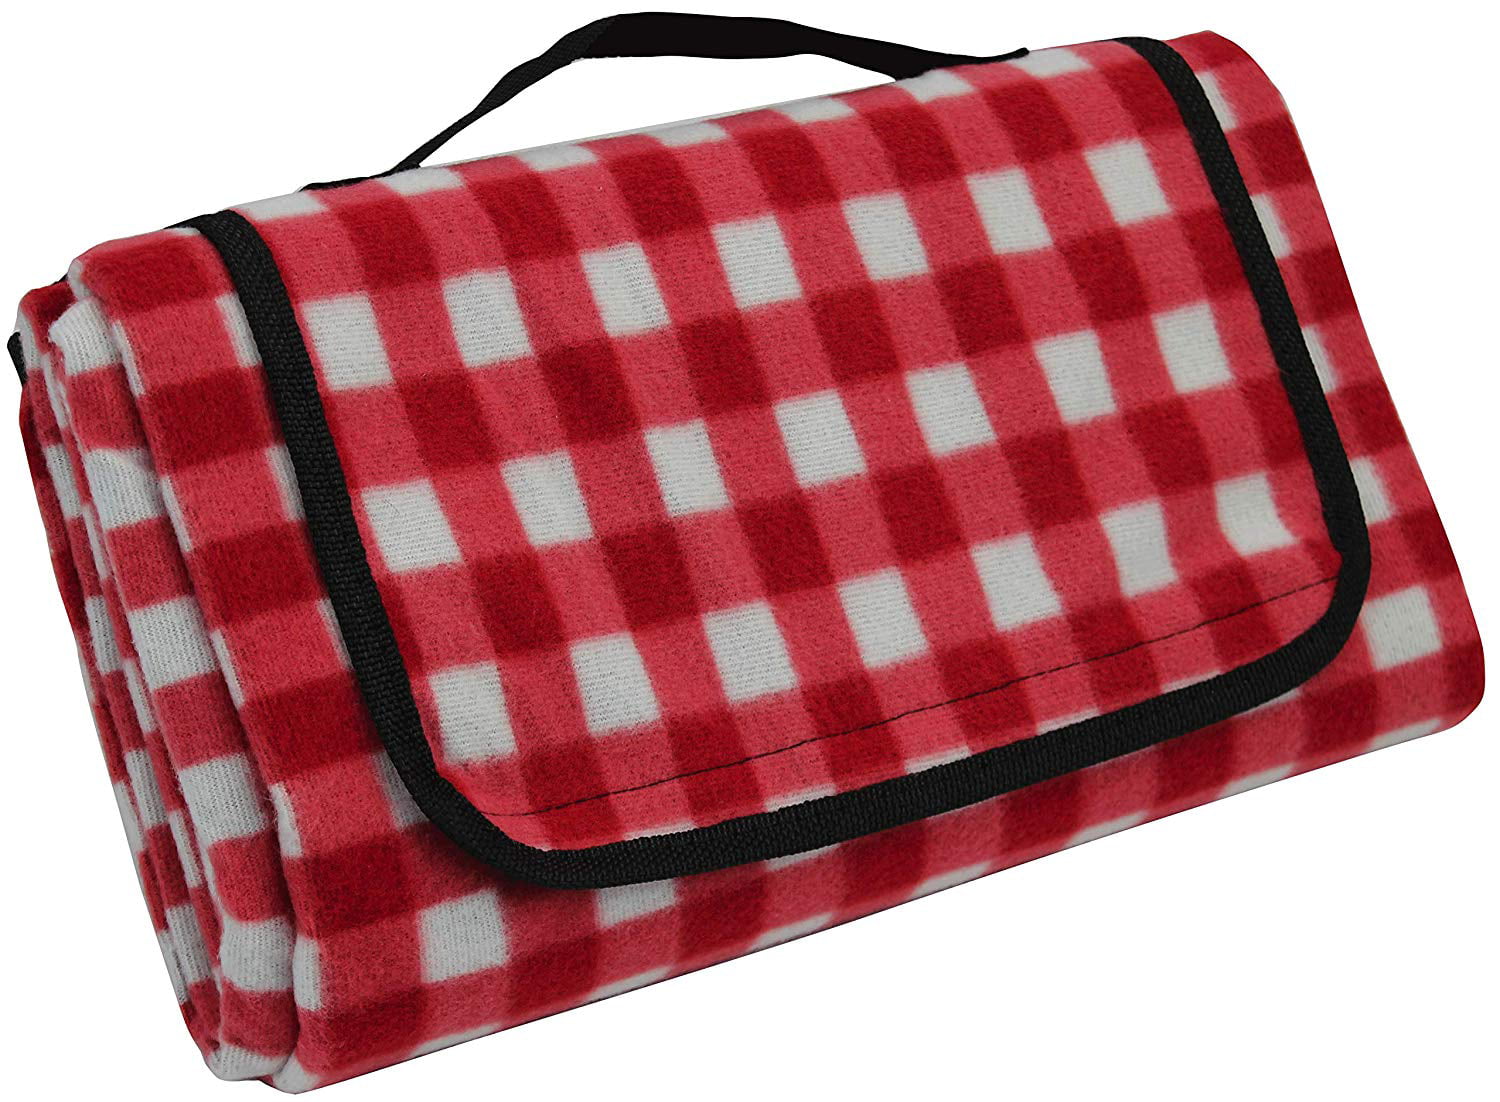 fleece blanket with waterproof backing